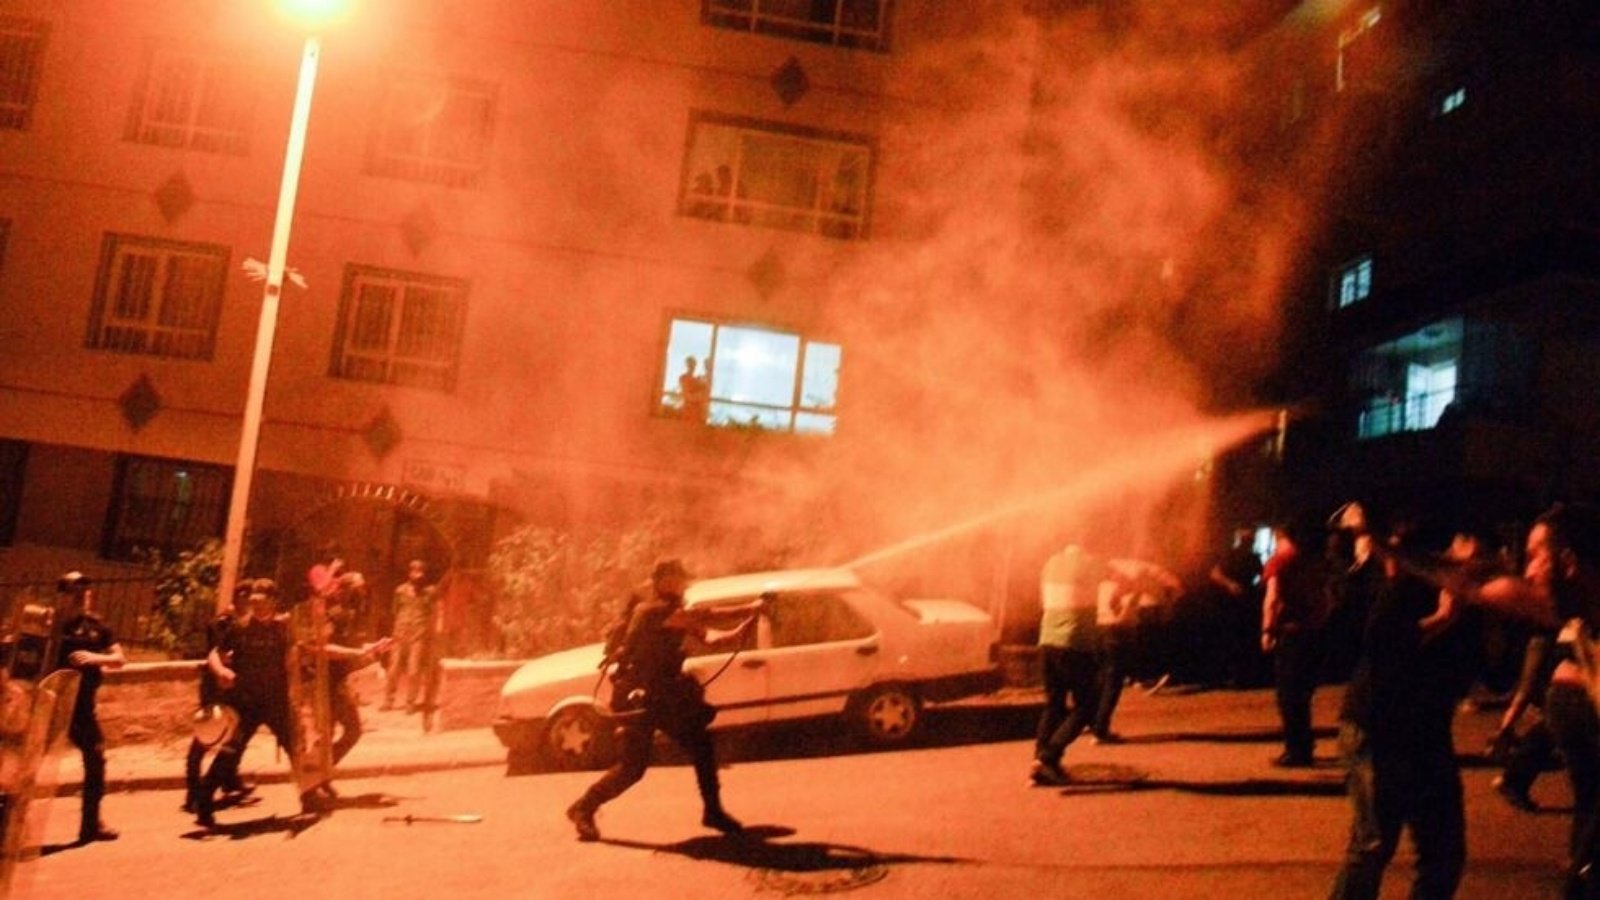 الشرطة التركية تطلق الغاز المسيل للدموع لتفريق مجموعة كانت تعتدي على متاجر يعتقد أنّها تتبع سوريين، أنقرة 12 آب (أغسطس) 2021 